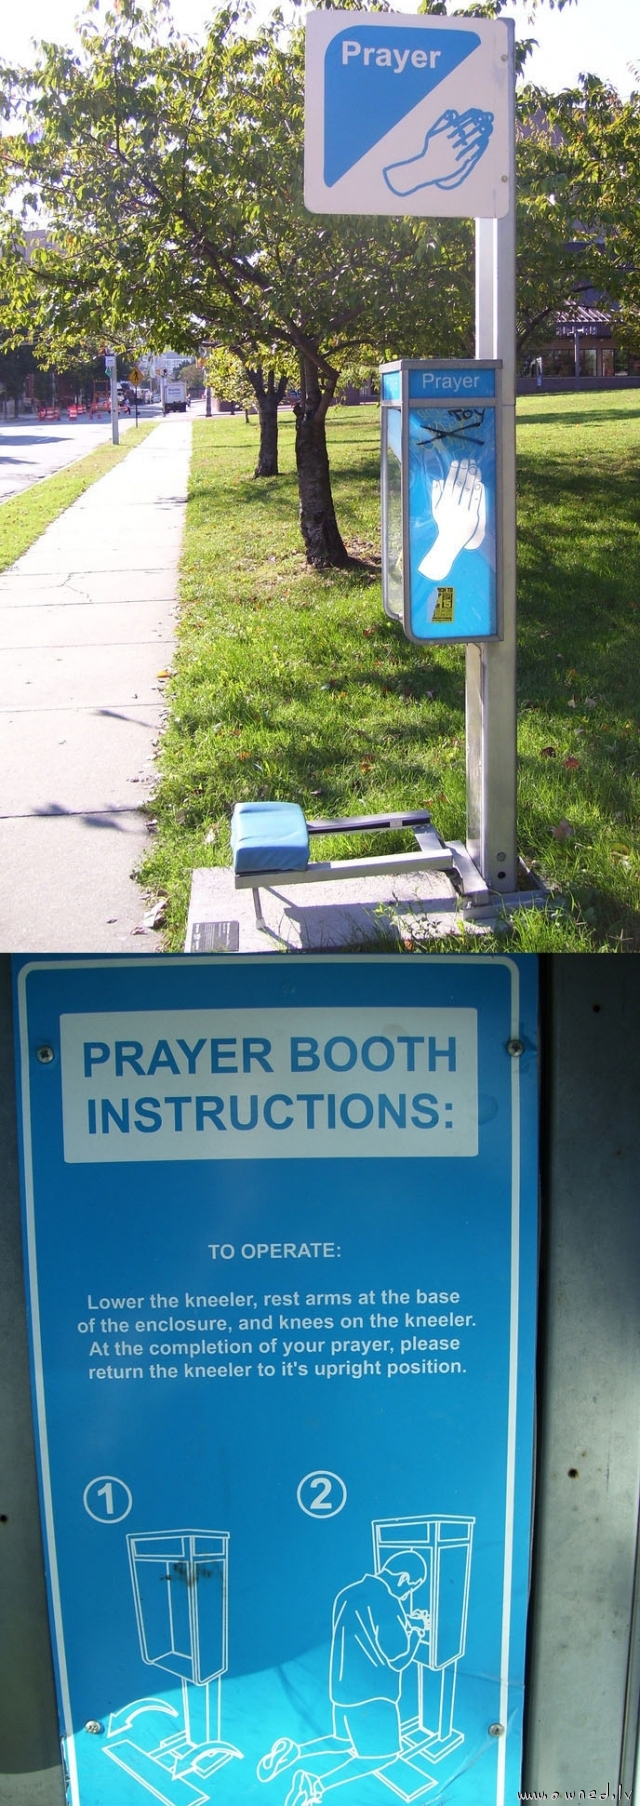 Prayer booth